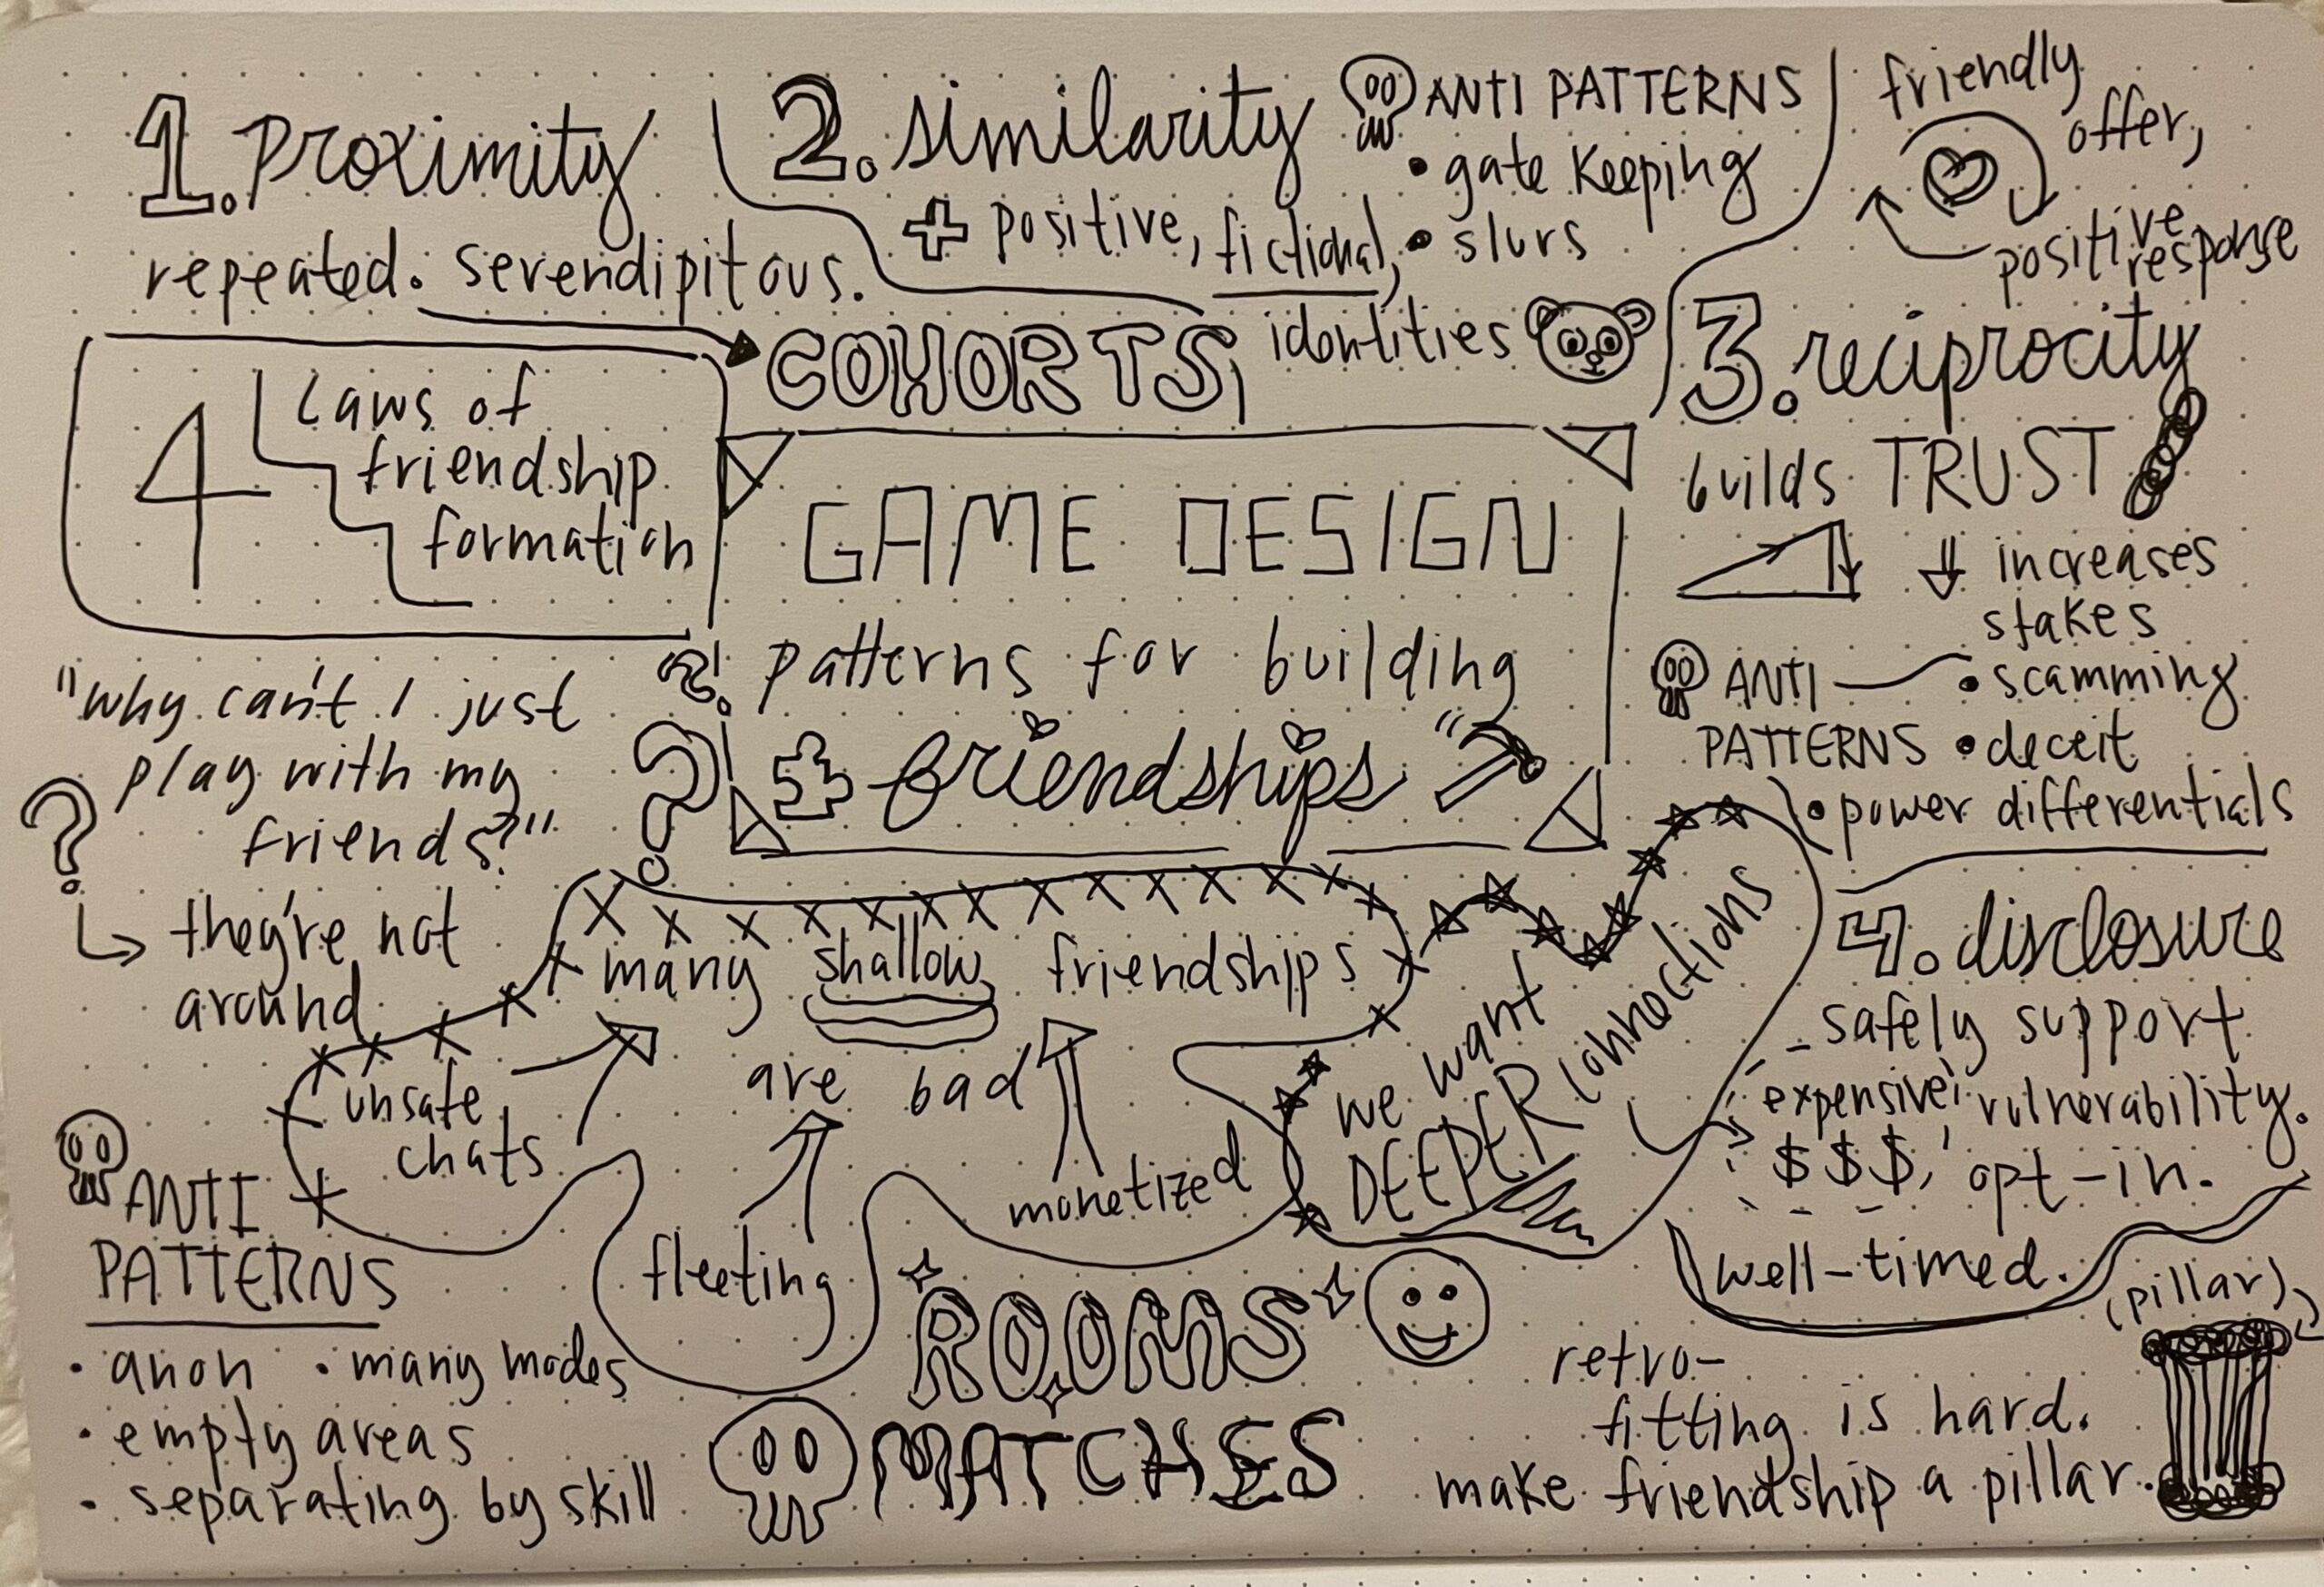 elyse's sketchnote on Game Design Patterns for Building Friendships